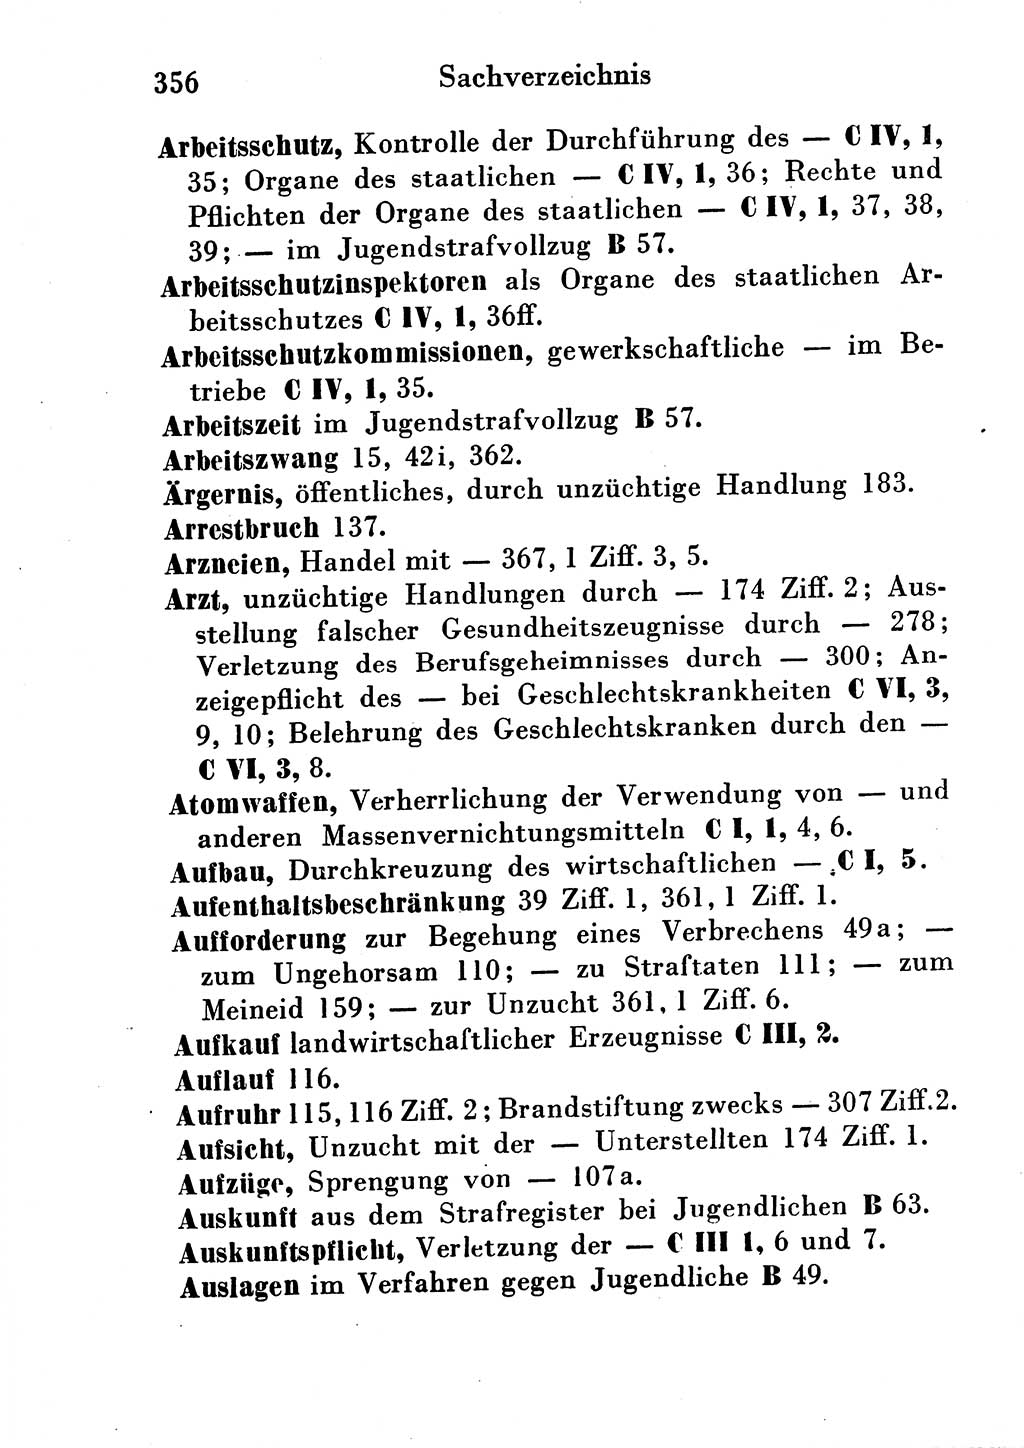 Strafgesetzbuch (StGB) und andere Strafgesetze [Deutsche Demokratische Republik (DDR)] 1954, Seite 356 (StGB Strafges. DDR 1954, S. 356)